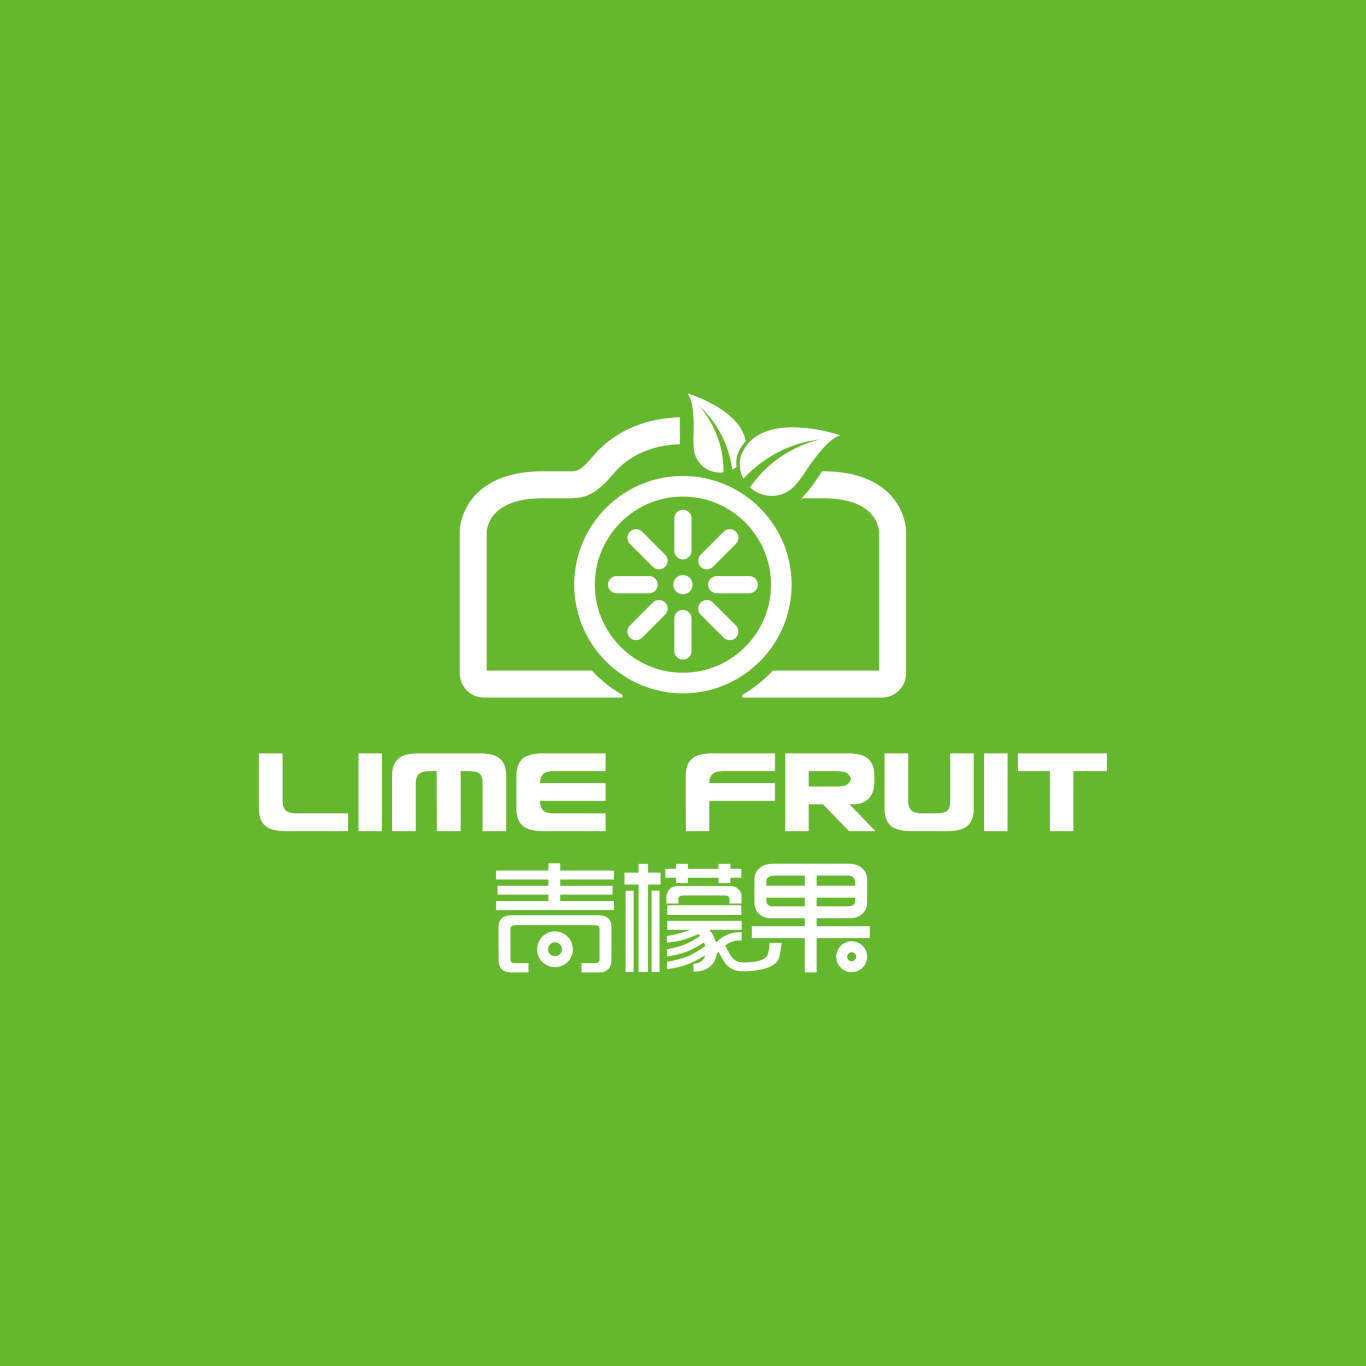 安徽青檬果传承影像品牌形象设计图1